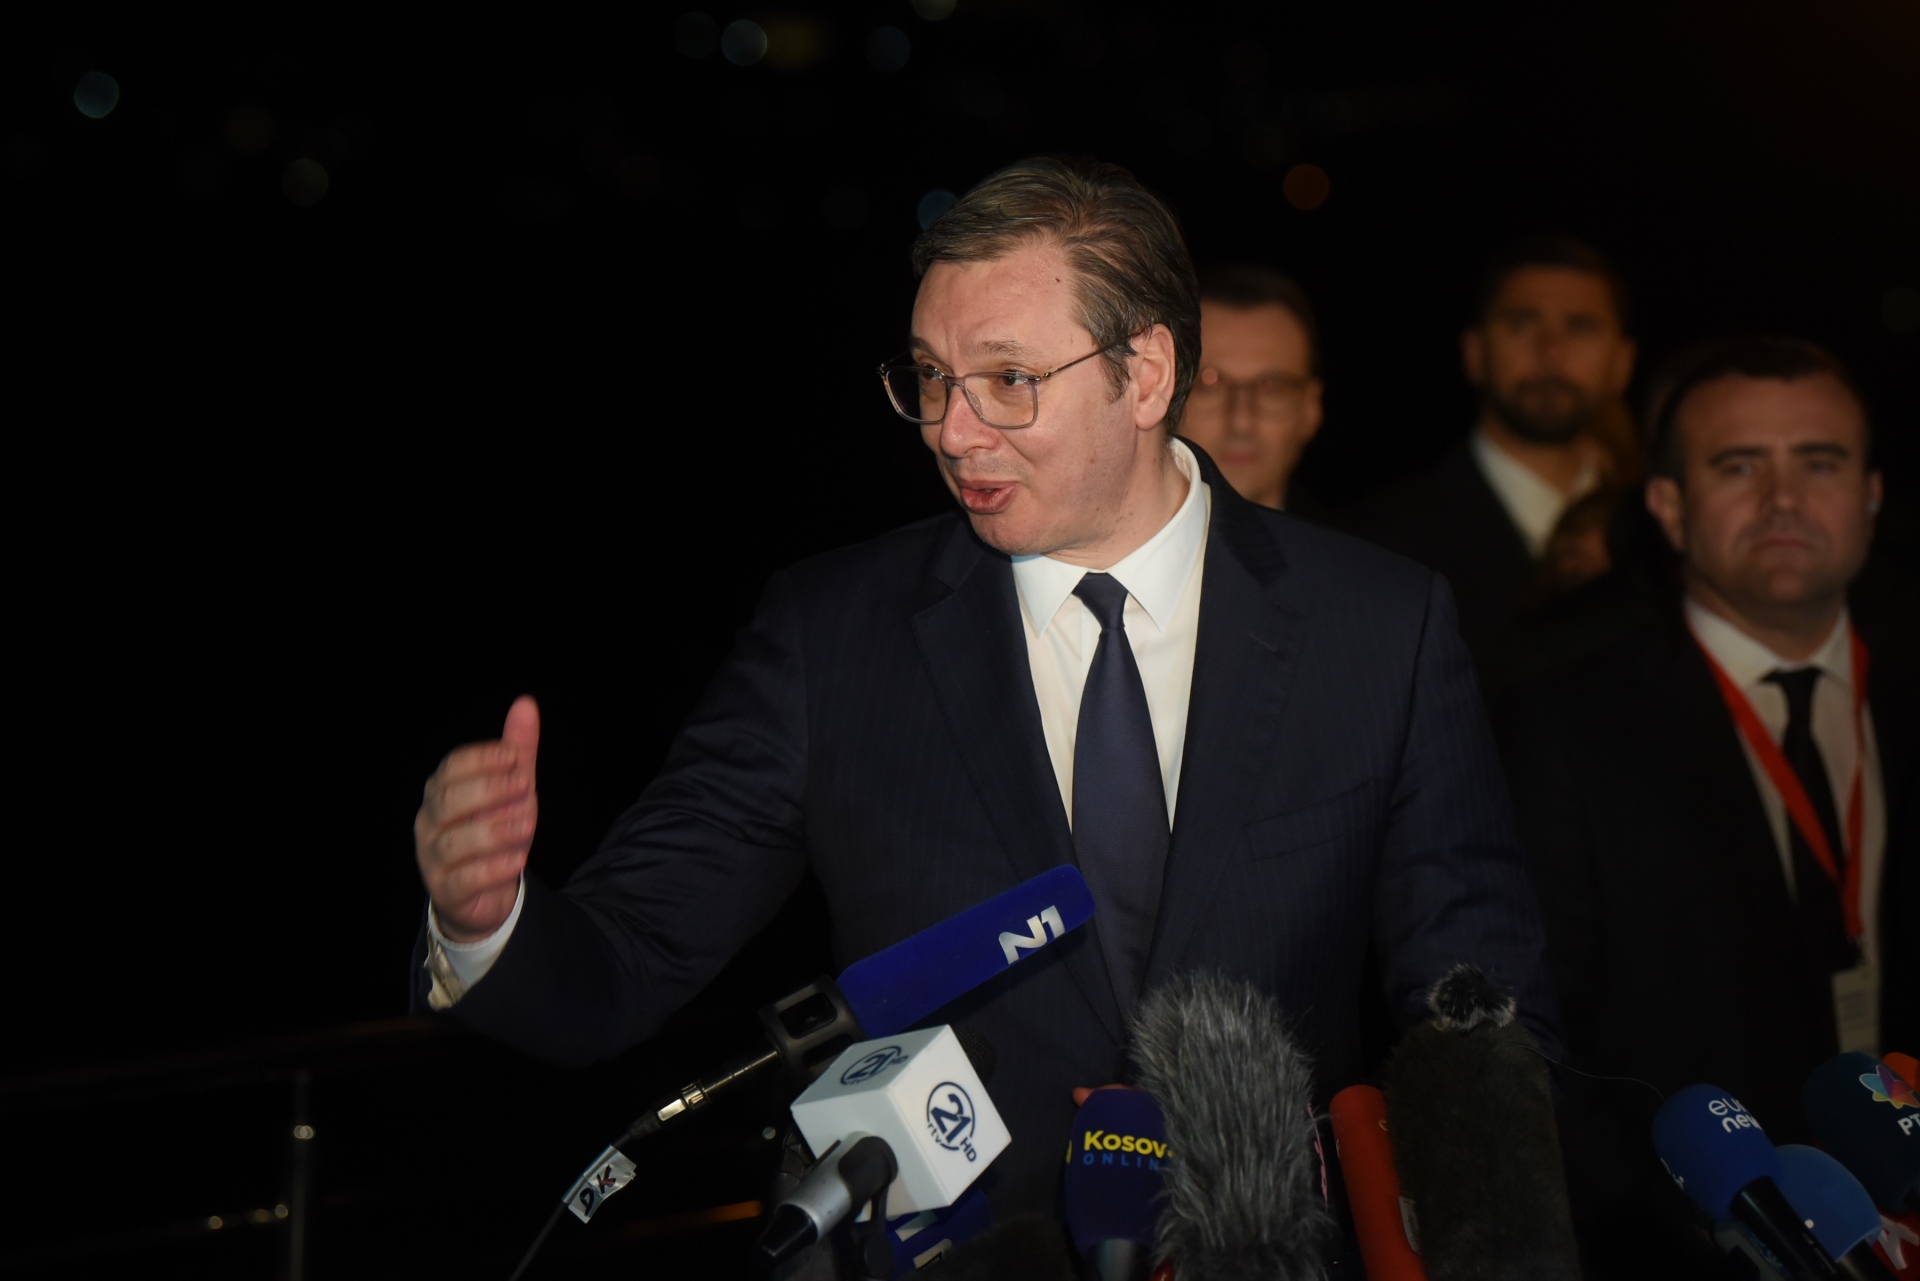 Председник Републике Србије Александар Вучић изјавио је у Охриду да је некакав договор постигнут и да је задовољан због тога, као и да ништа није потписао и да није био дан Д.